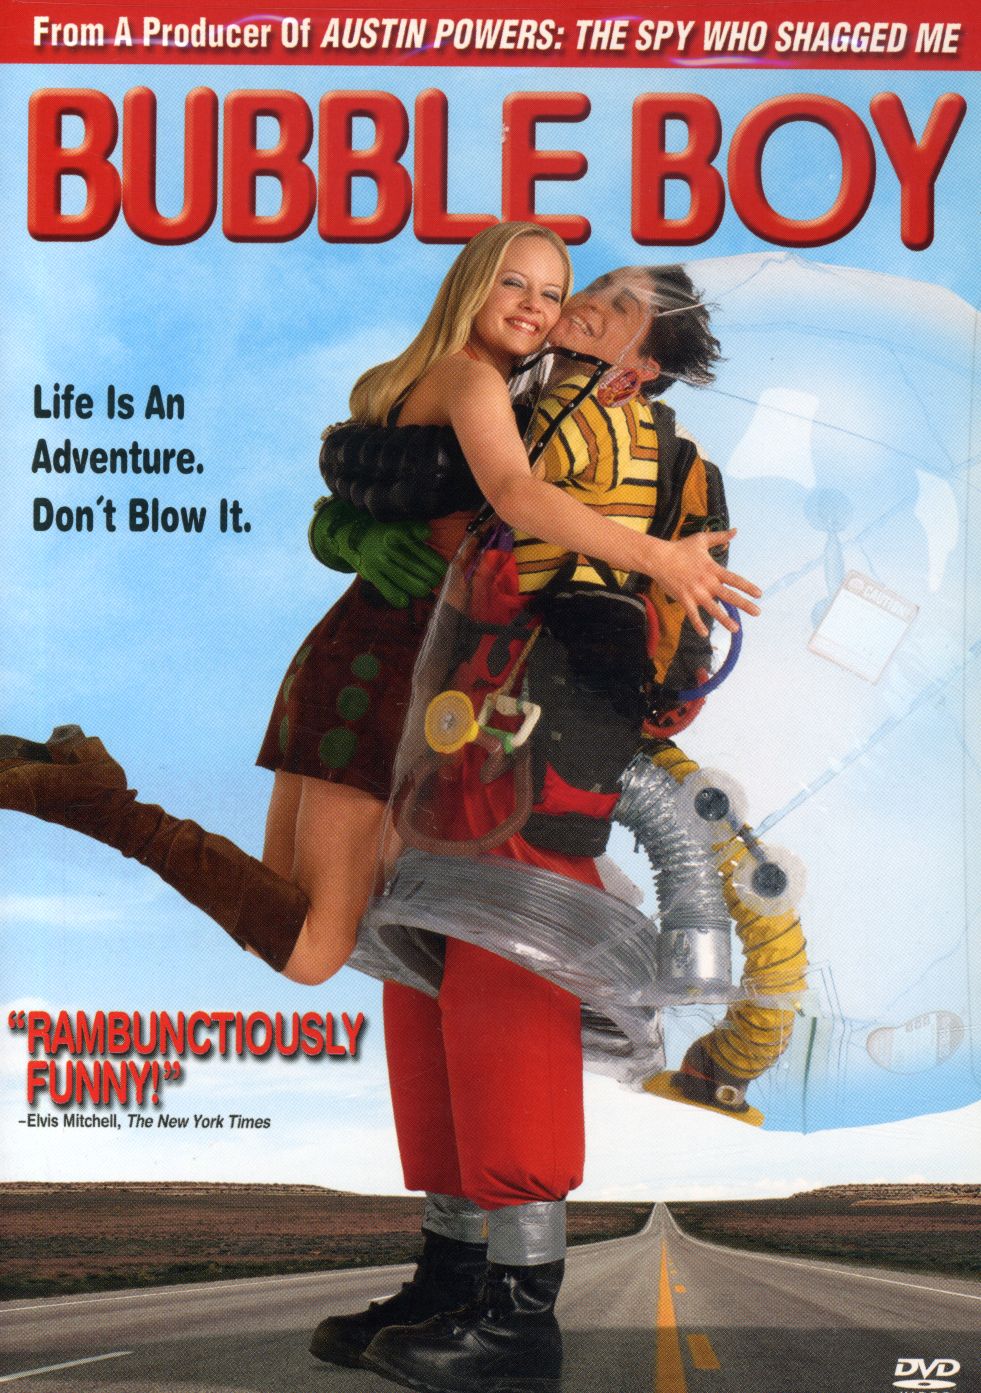 Bubble Boy (DVD)   Shopping Comedy